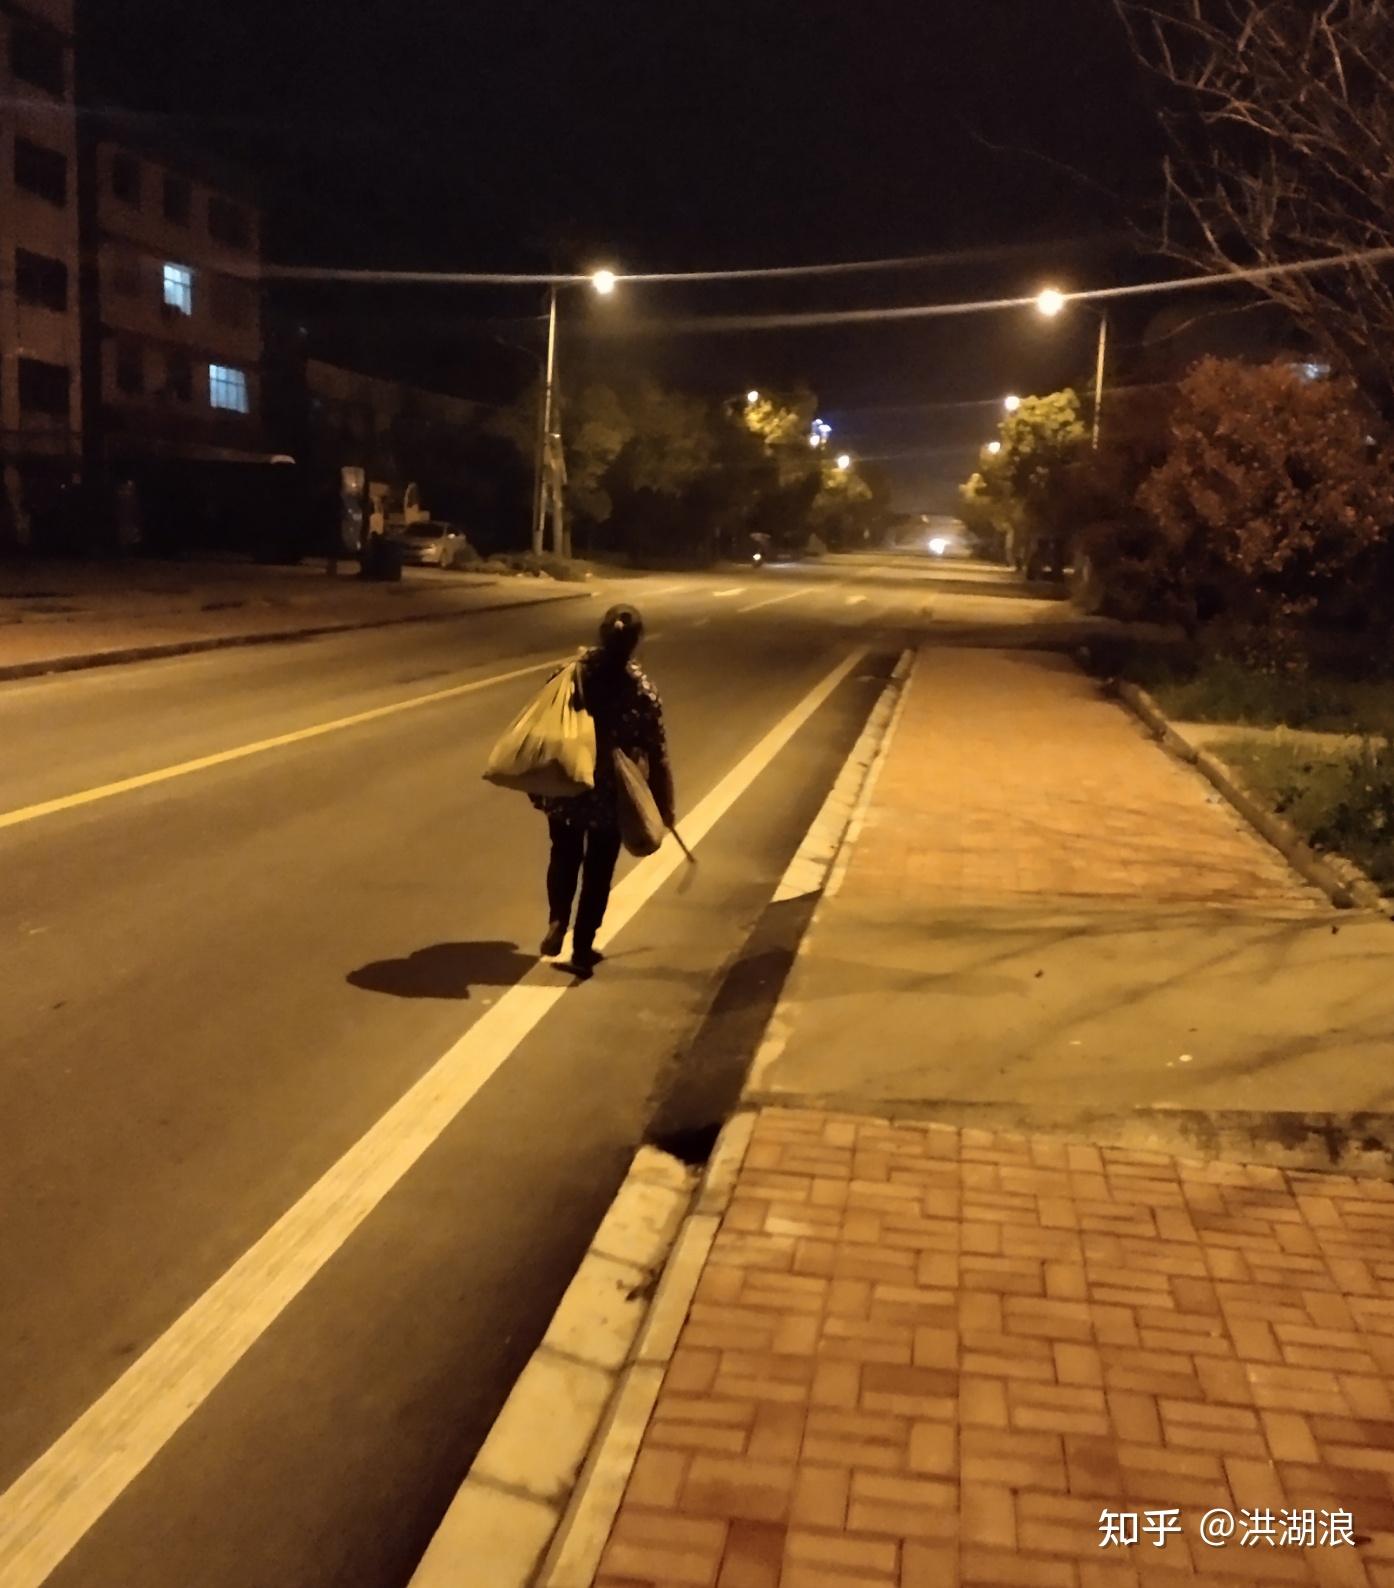 夜晚街头照片一个人图片